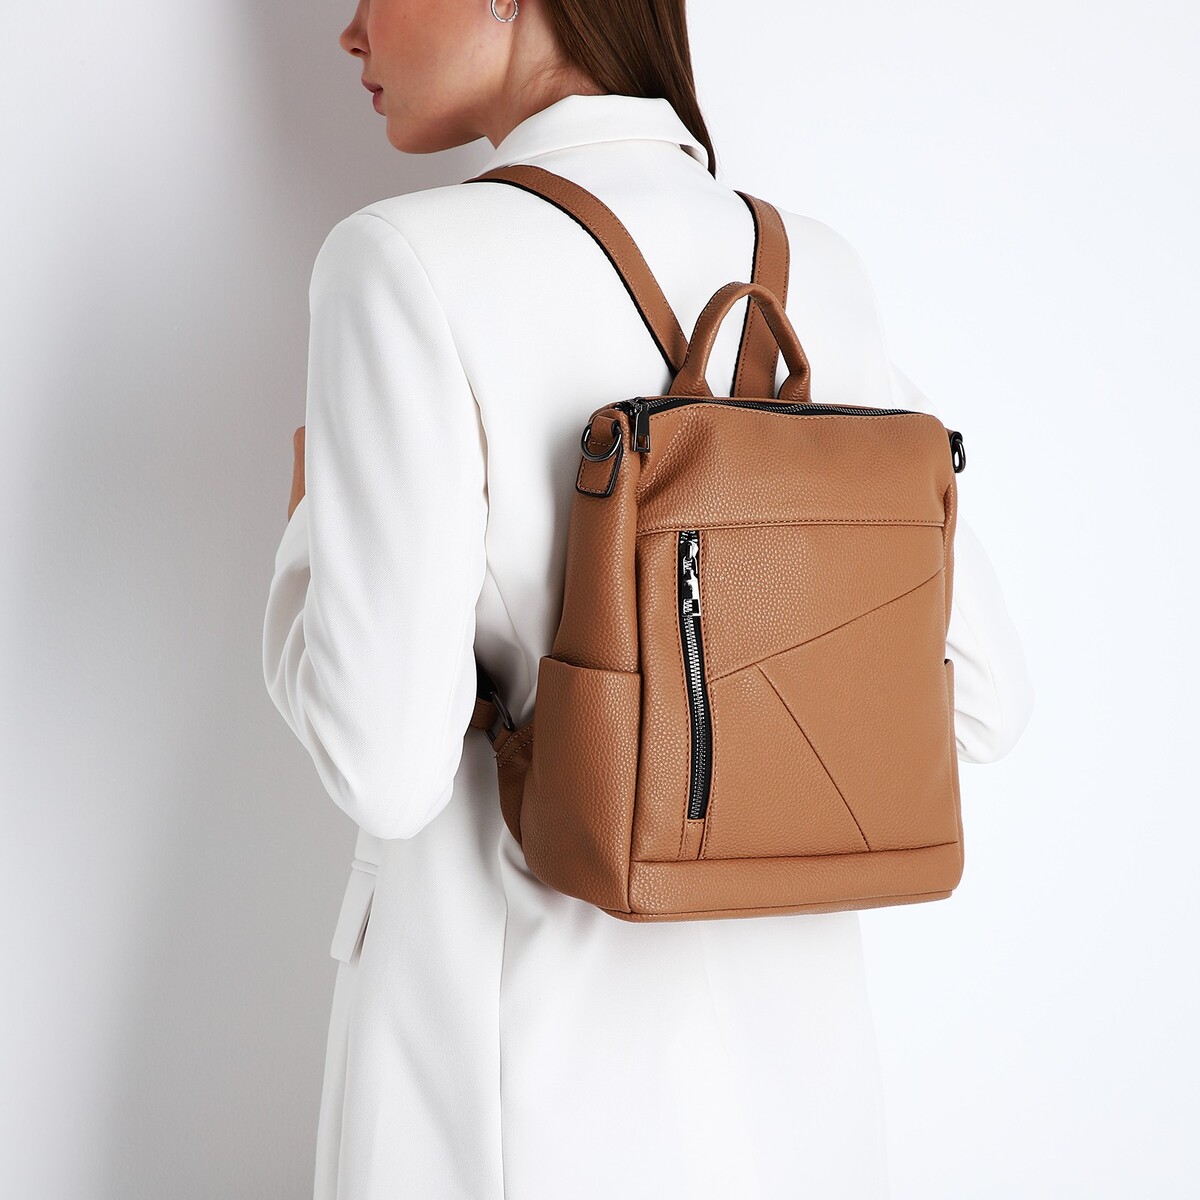 Рюкзак женский из искусственной кожи на молнии, 4 кармана, цвет коричневый рюкзак молодежный из искусственной кожи на молнии 4 кармана